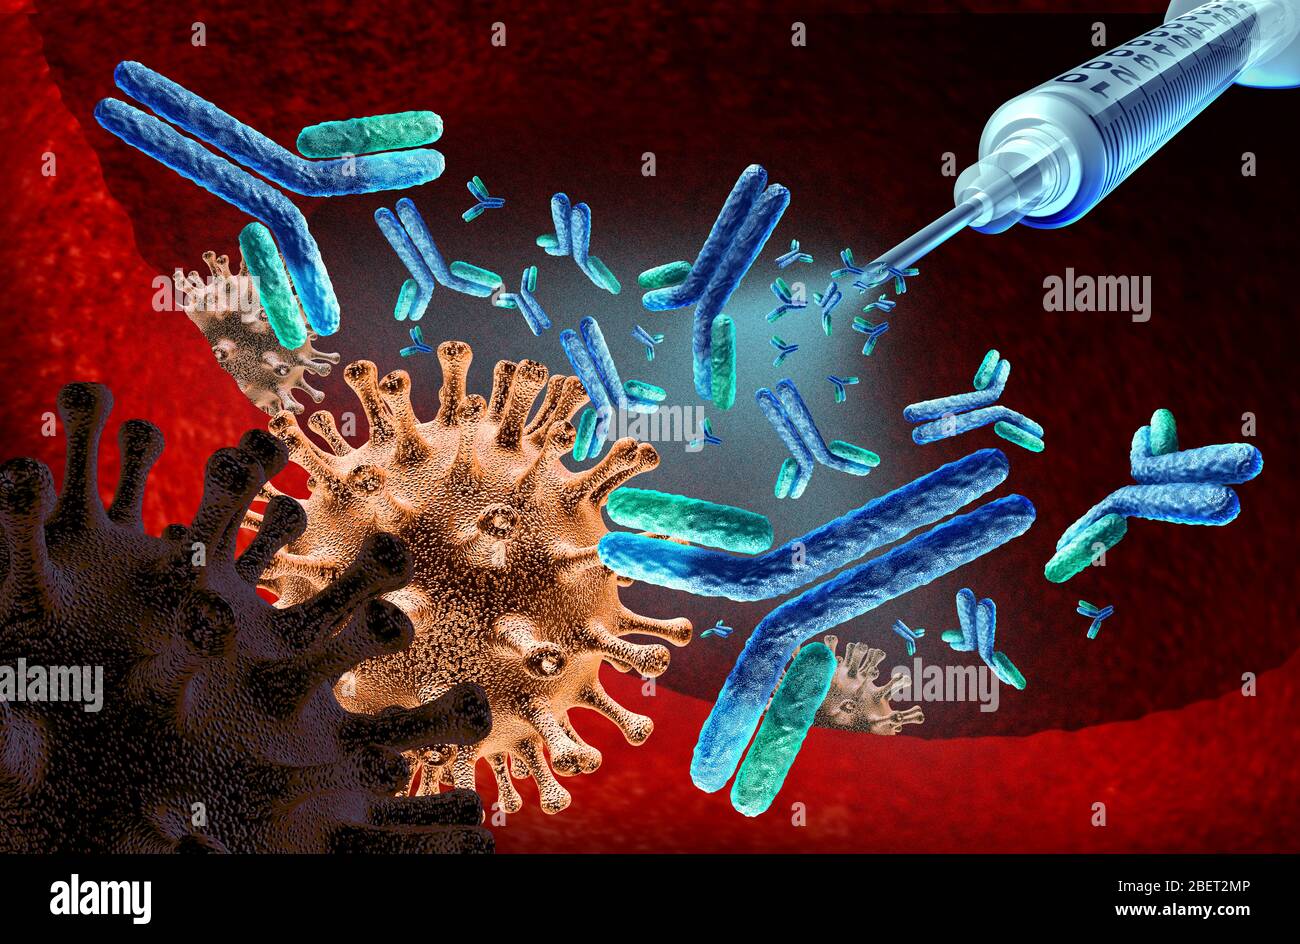 Immunglobulin-Therapie und Impfstoff für Virusinfektion oder bakterielle Krankheit Konzept als onkologische Behandlung Konzept mit Antikörperbehandlung. Stockfoto